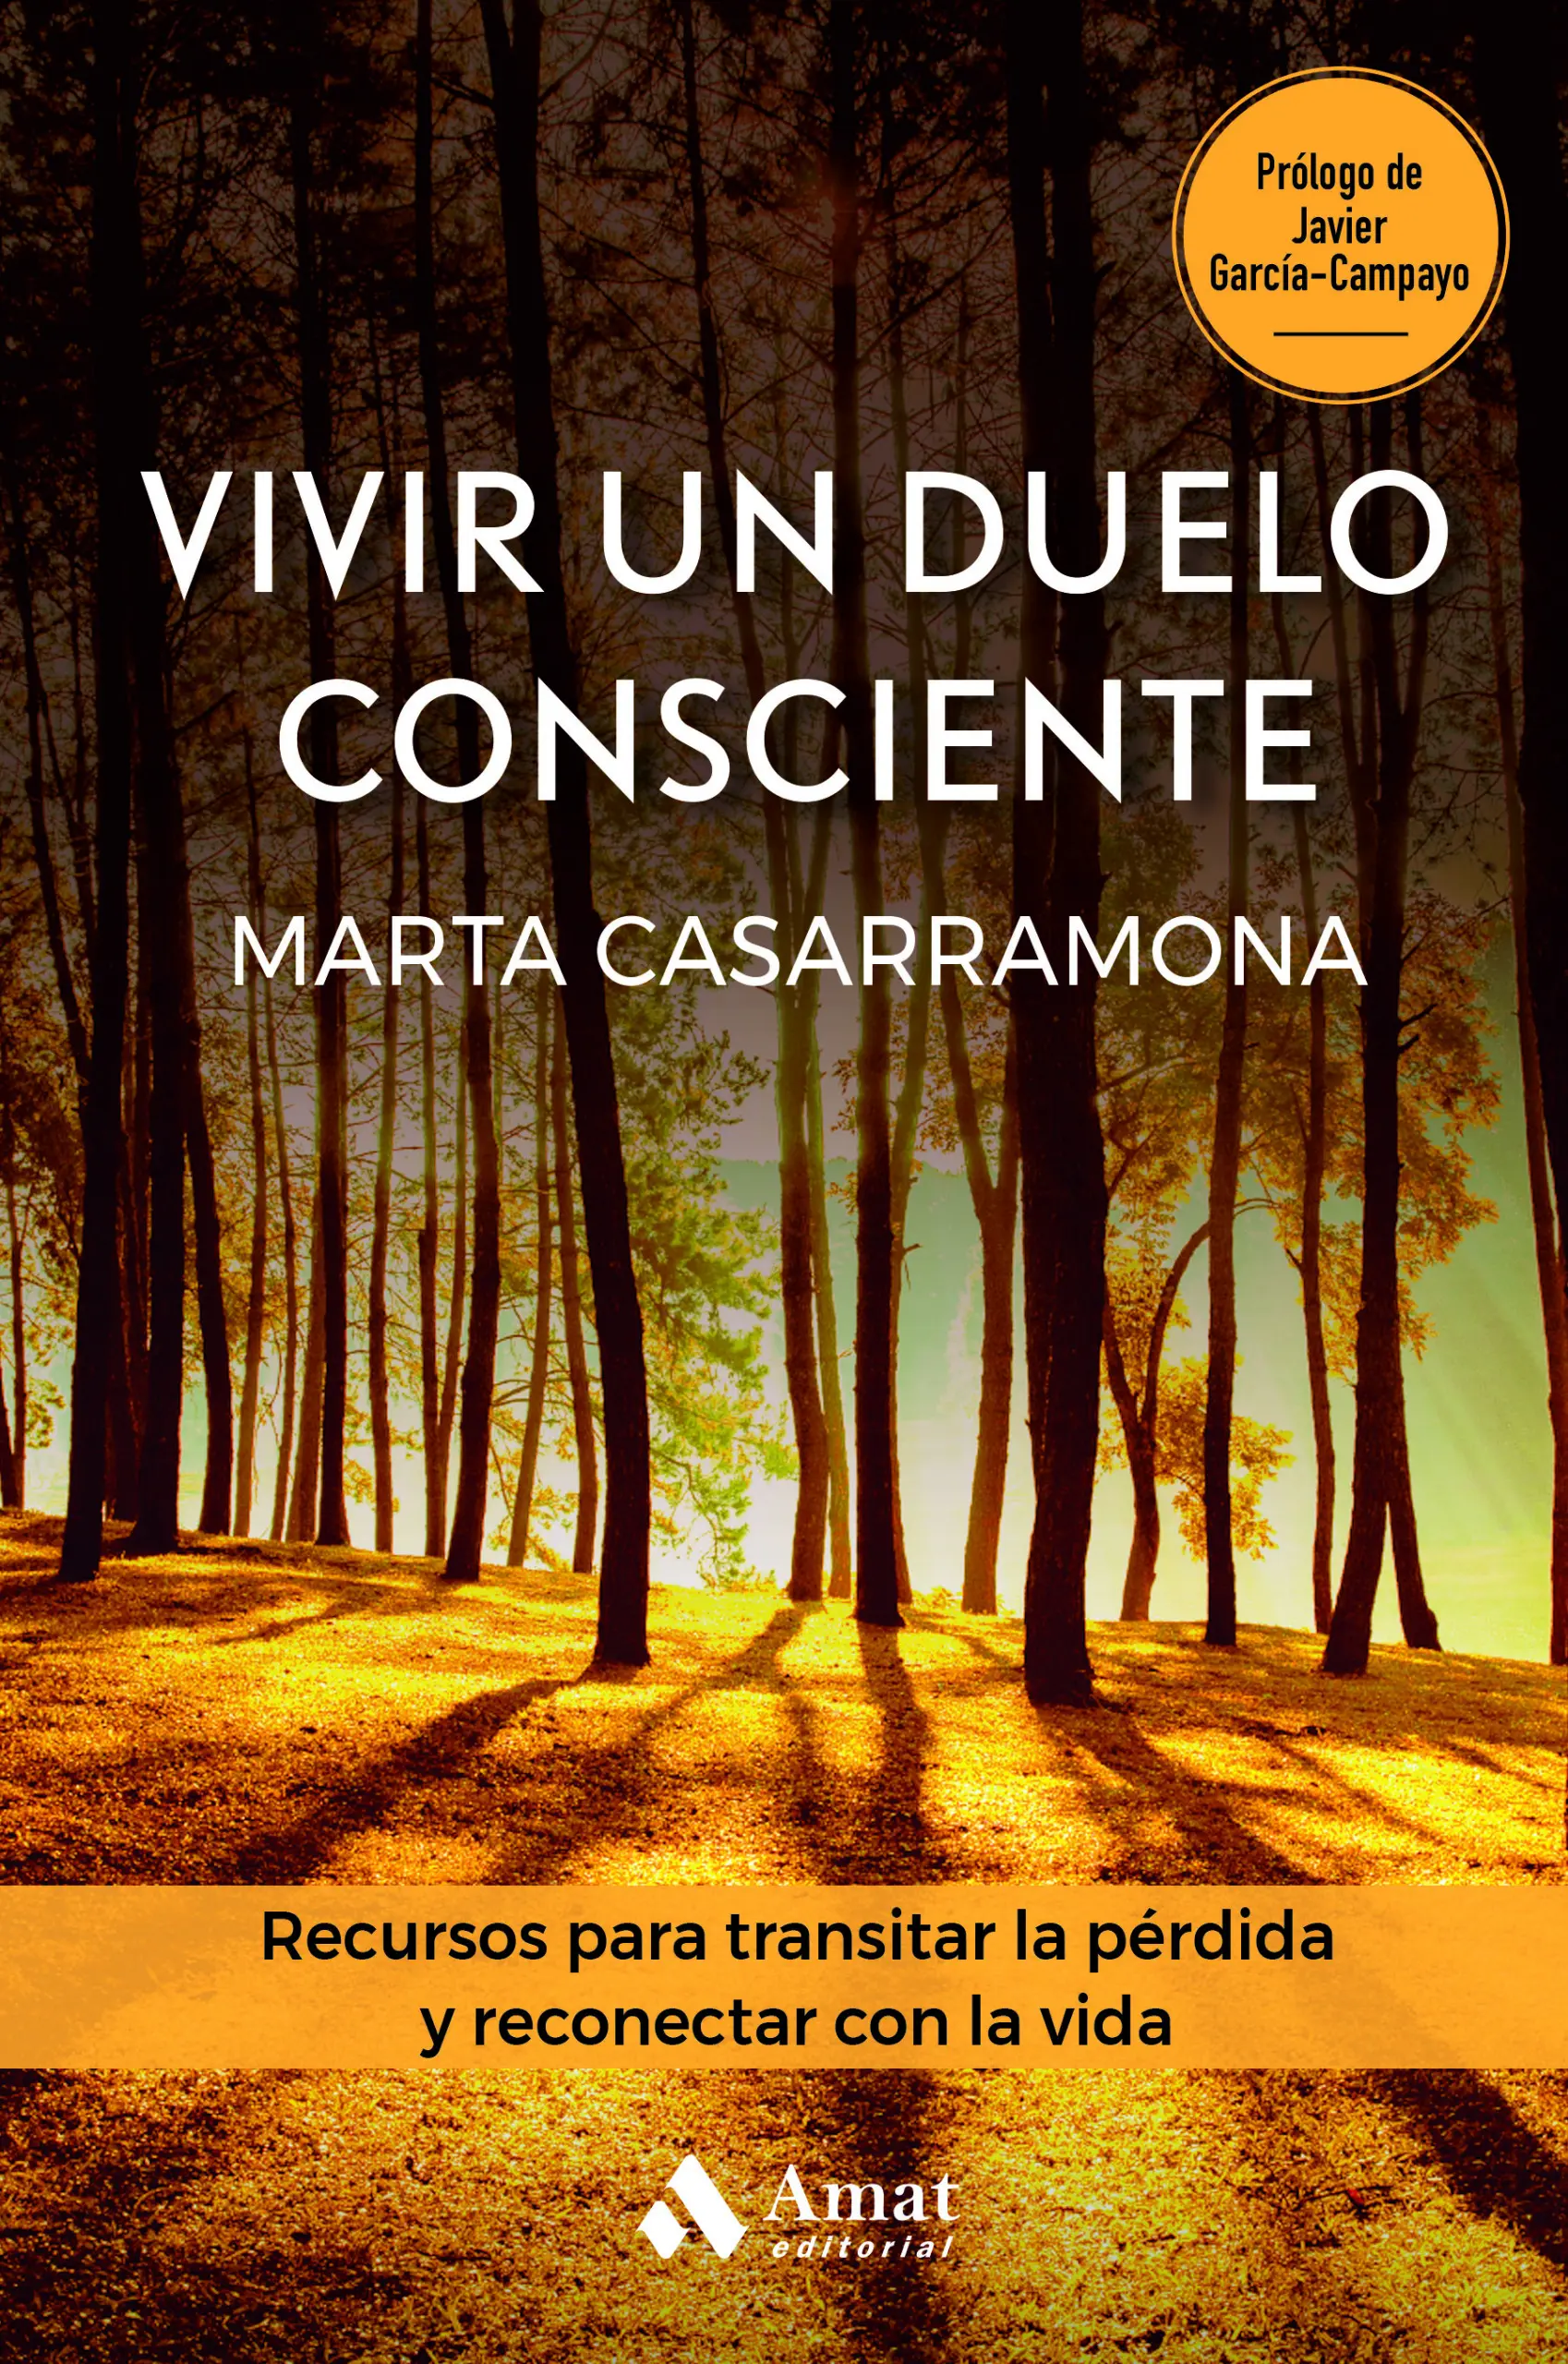 Vivir un duelo consciente | Marta Casarramona | Libros para vivir mejor